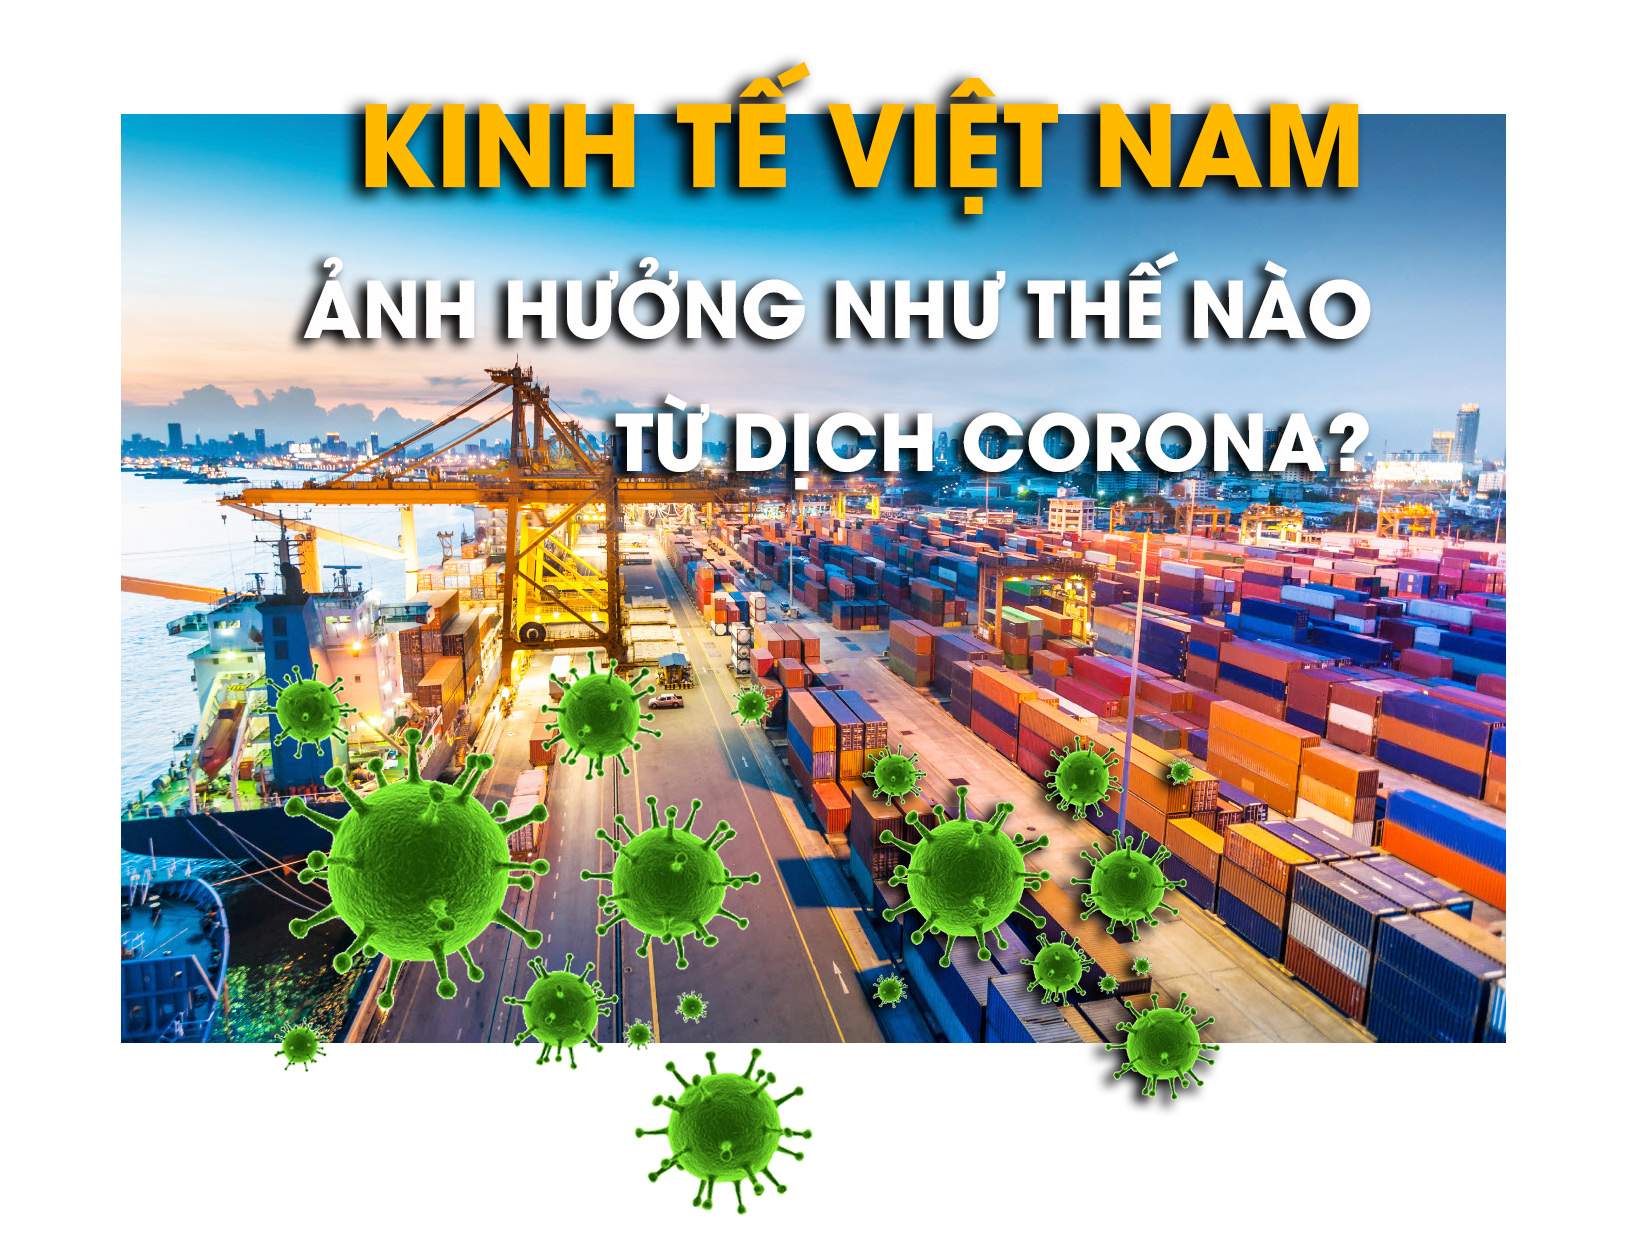 Dịch Corona gây ảnh hưởng thế nào tới kinh tế Việt Nam? - 1